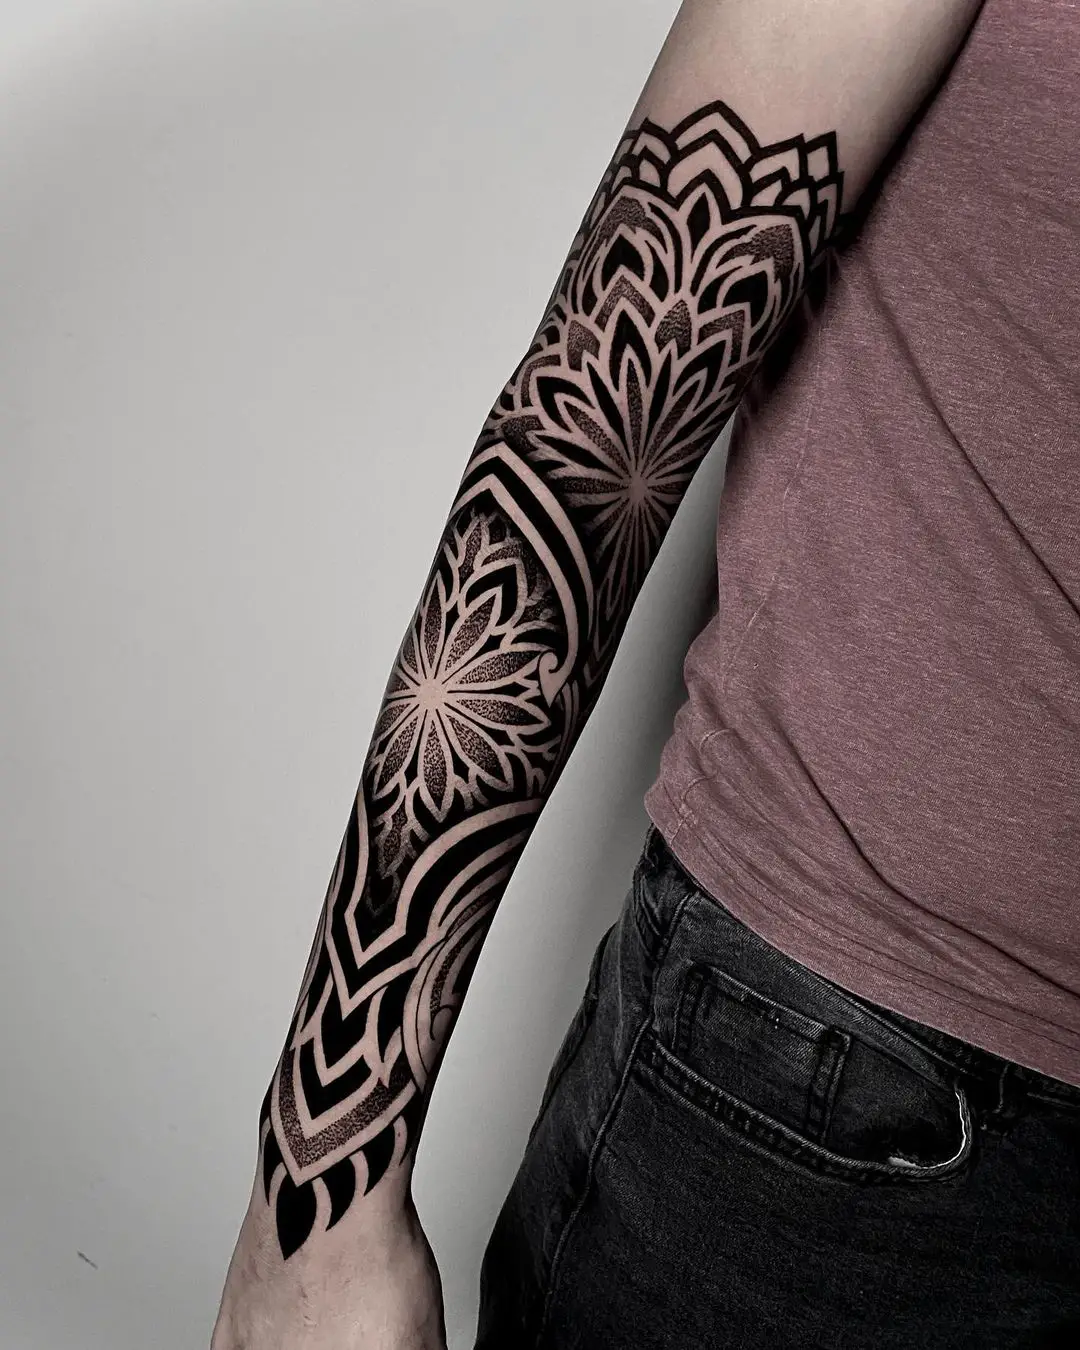 Mandala tattoo on arm by kelly23 tattoo